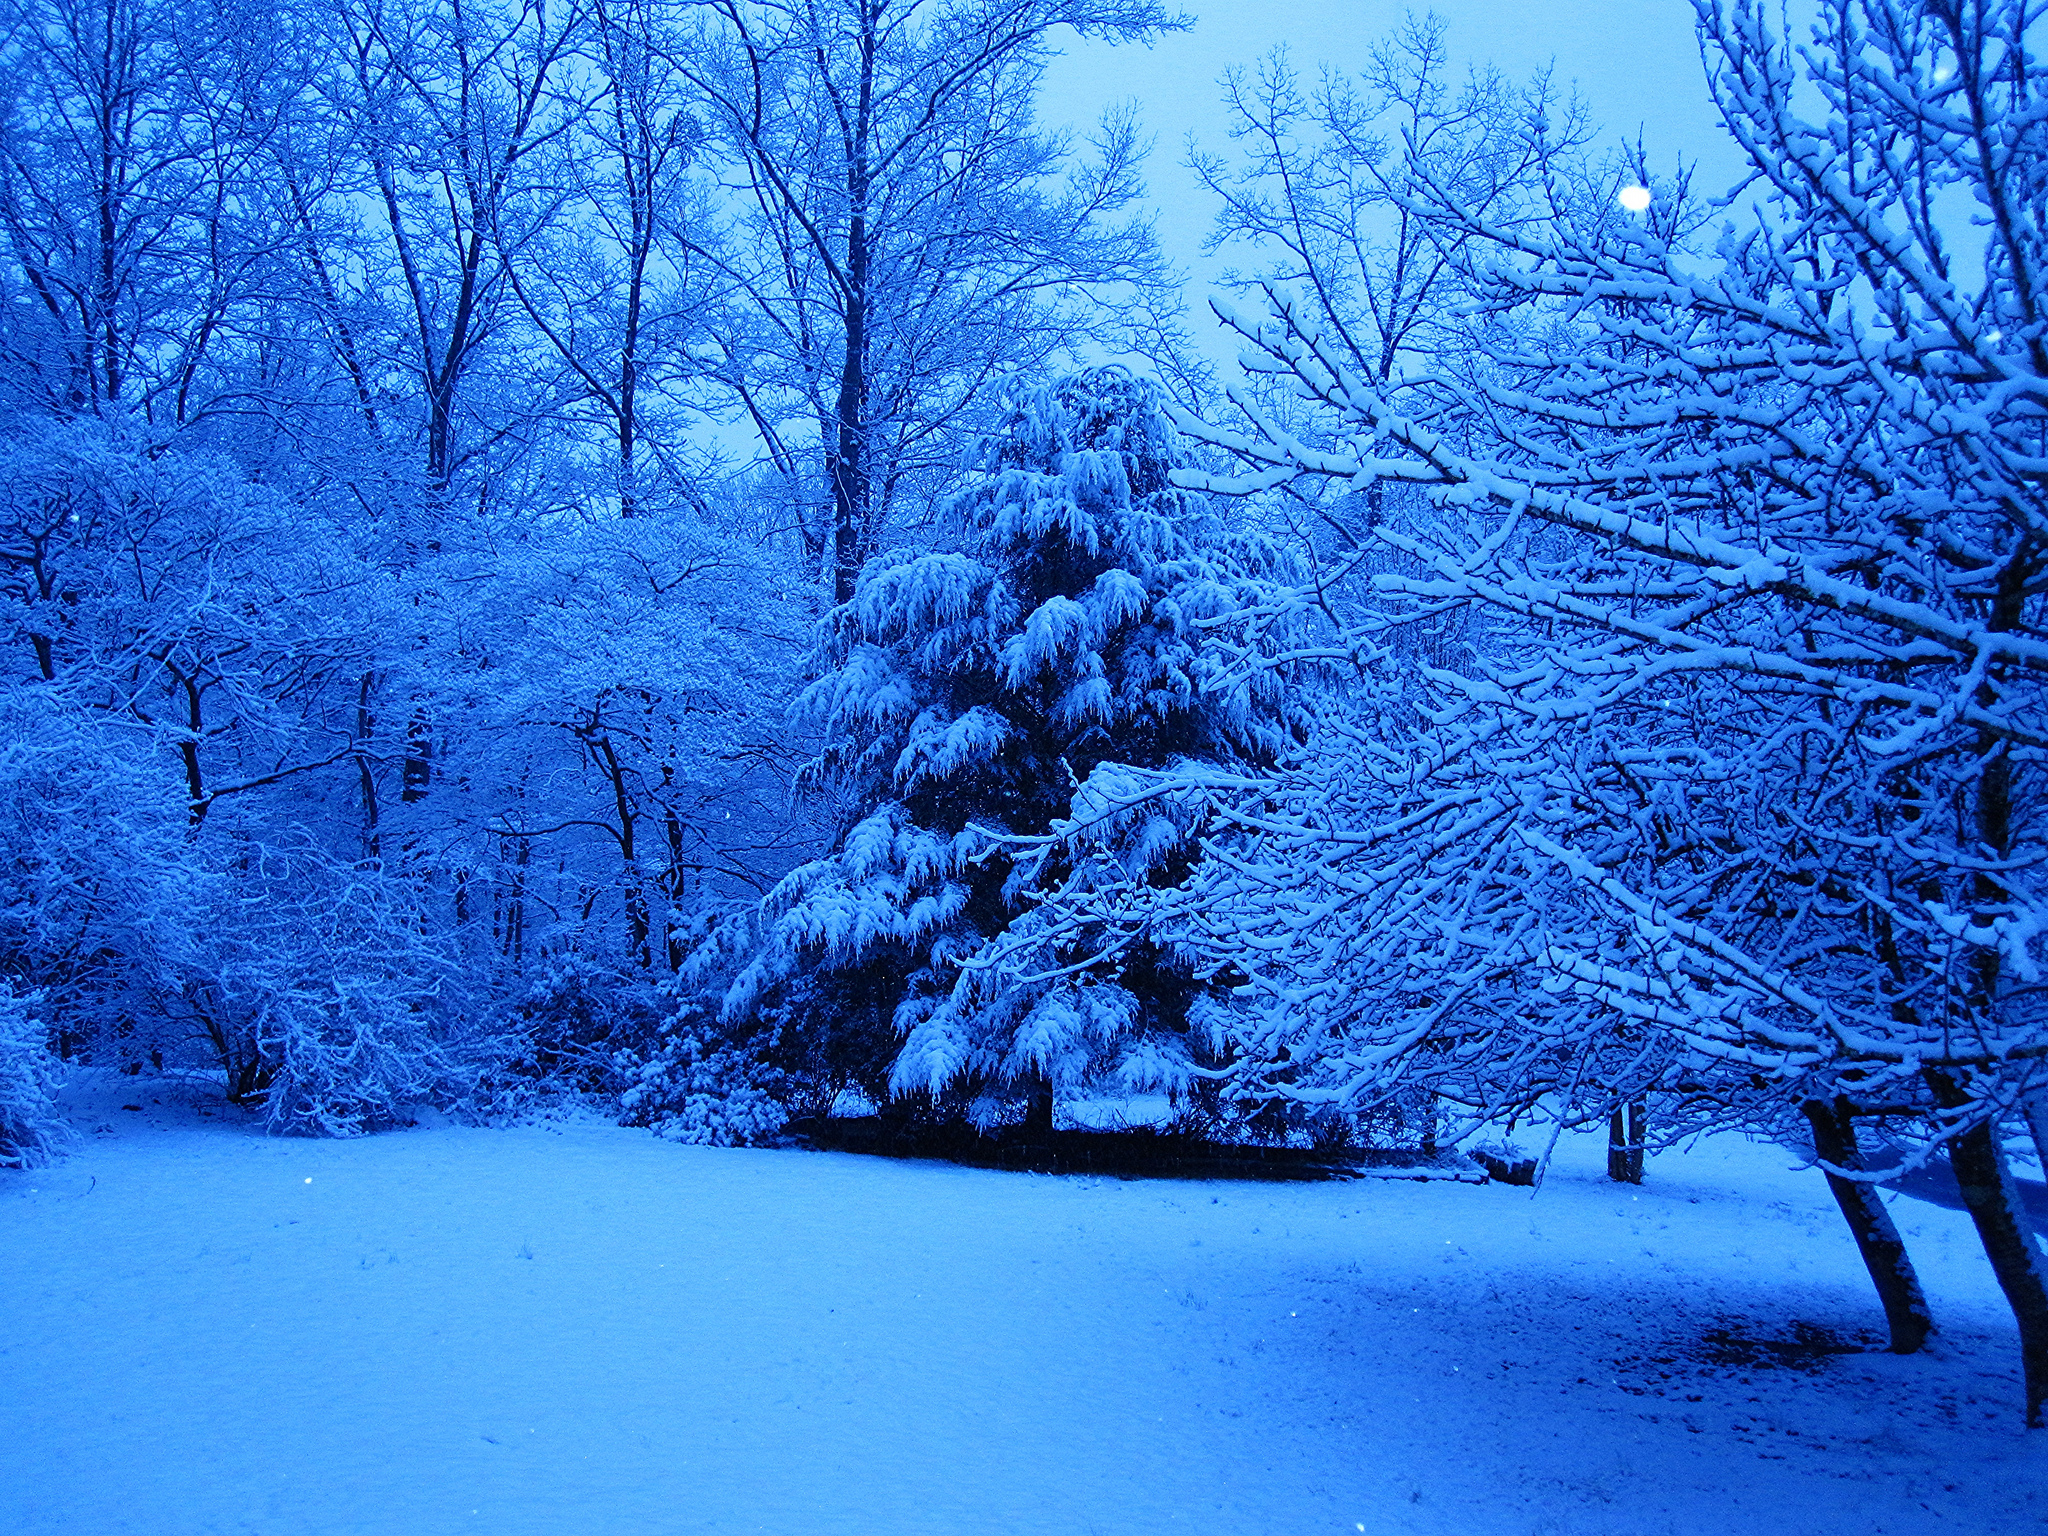 Скачать обои бесплатно Зима, Снег, Лес, Дерево, Синий, Земля/природа картинка на рабочий стол ПК